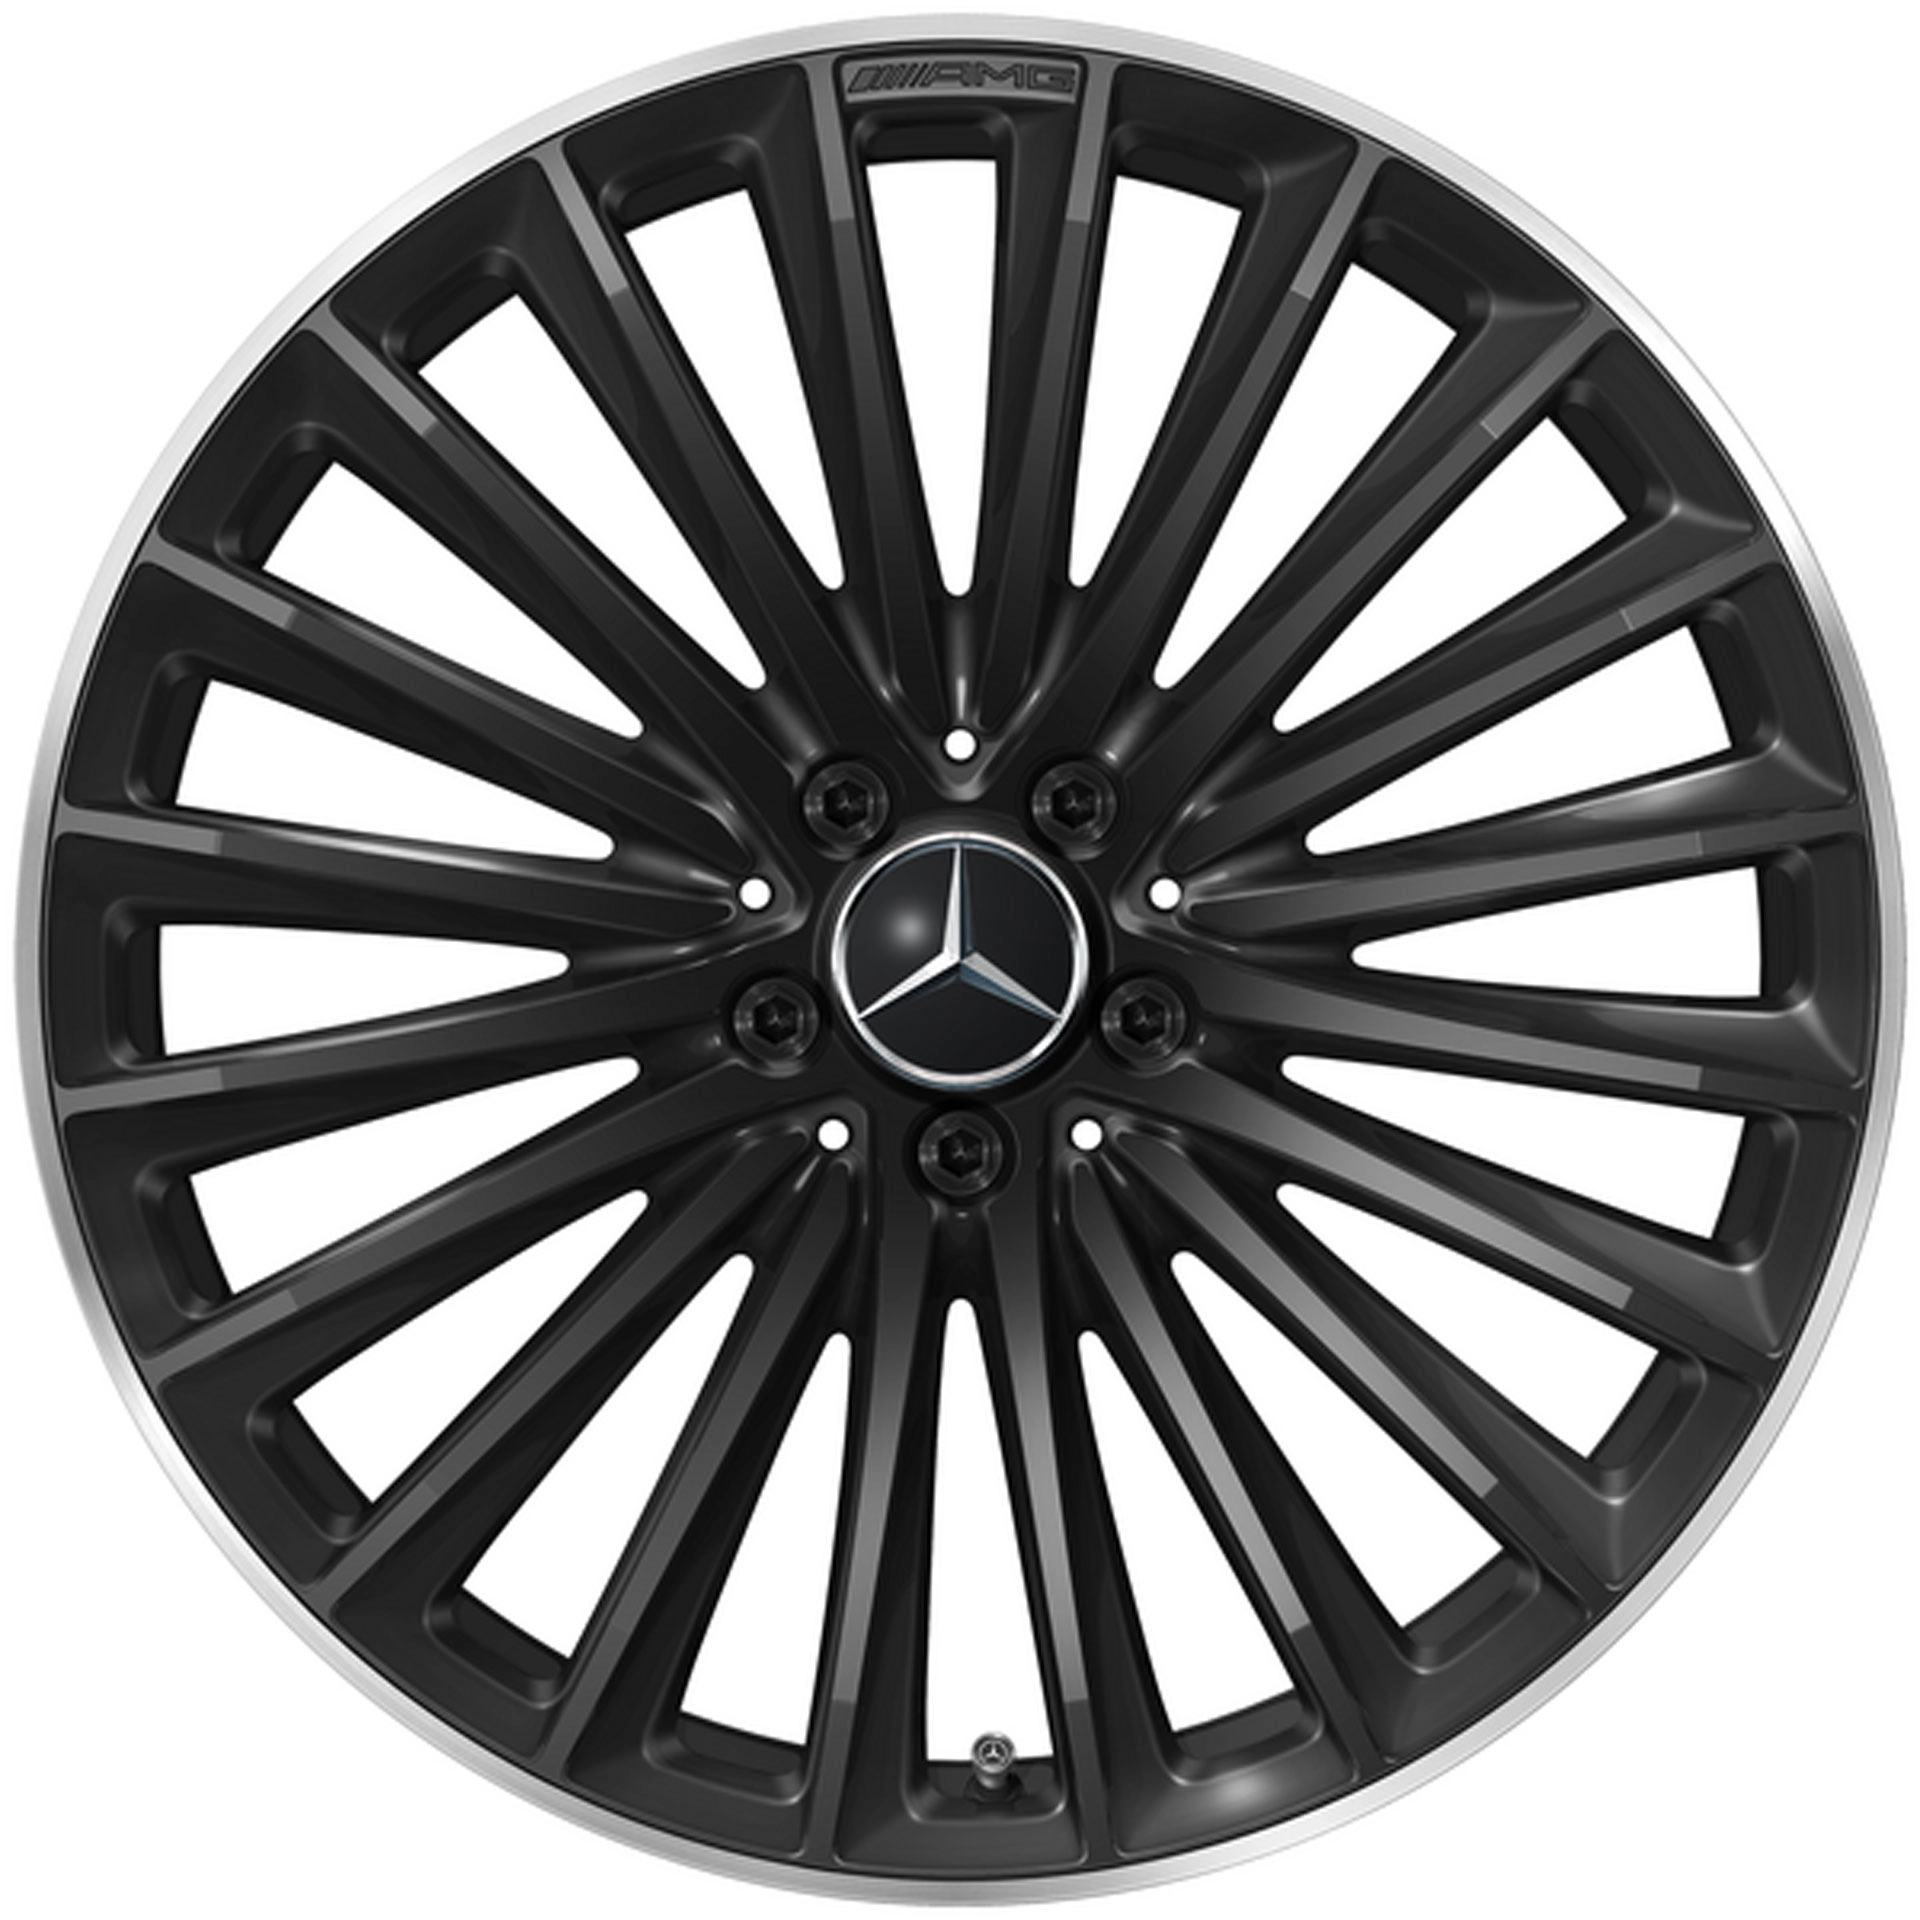 Mercedes-AMG Vielspeichen-Rad 20 Zoll Leichtmetallfelge GLC X254 schwarz glanzgedreht A25440109007X72